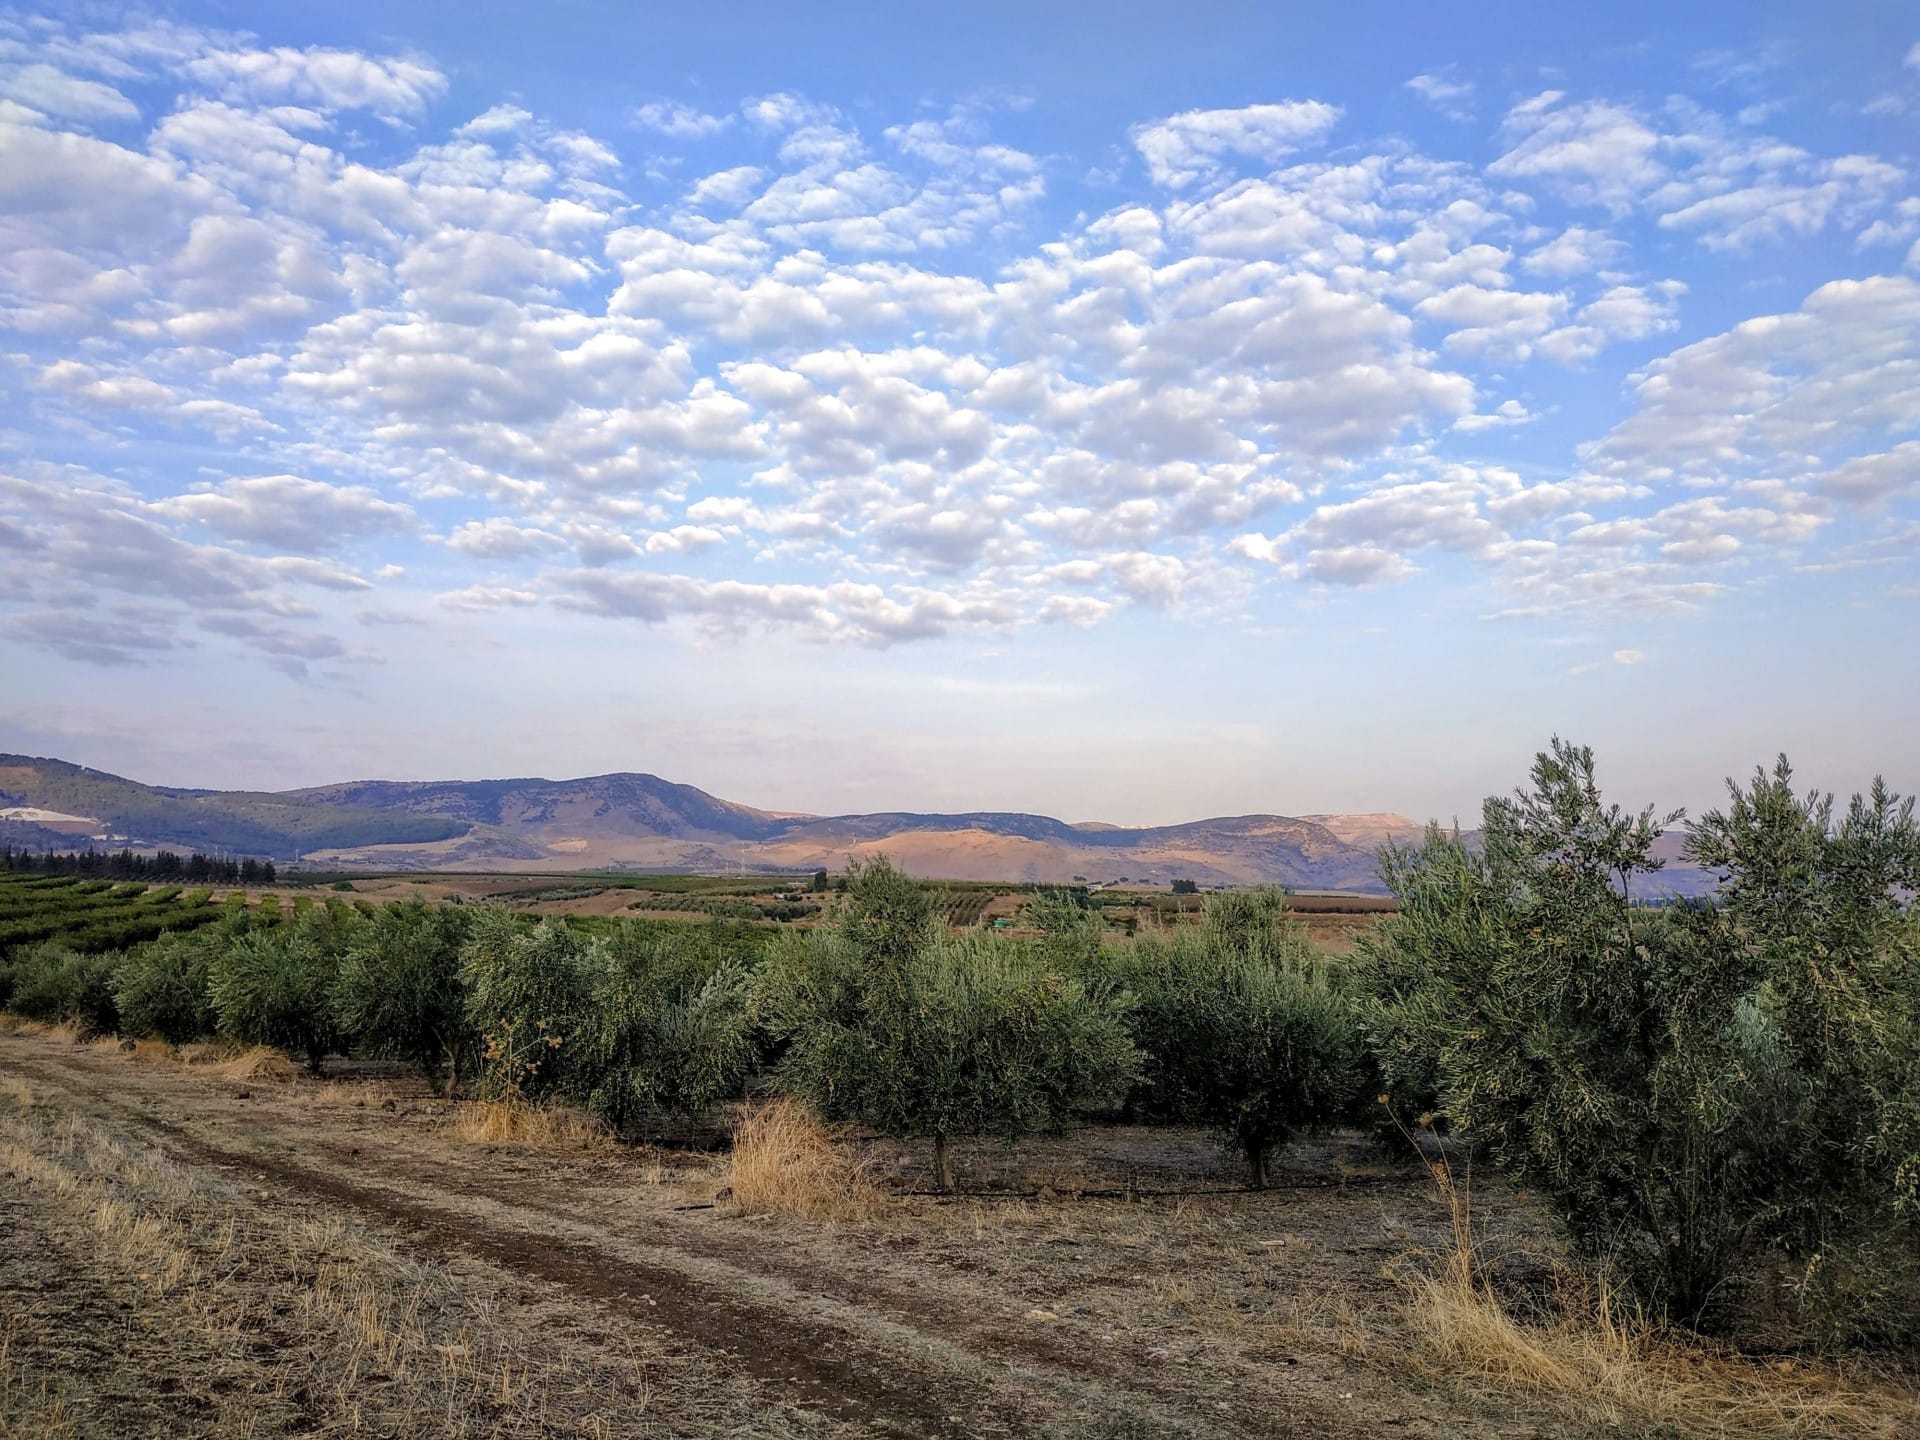 Африка-Ближний Восток-профили-лучшее-производство-оливкового масла-в поисках-качества-за-израильскими-производителями-отмеченные наградами-результаты-оливковое-масло-раз